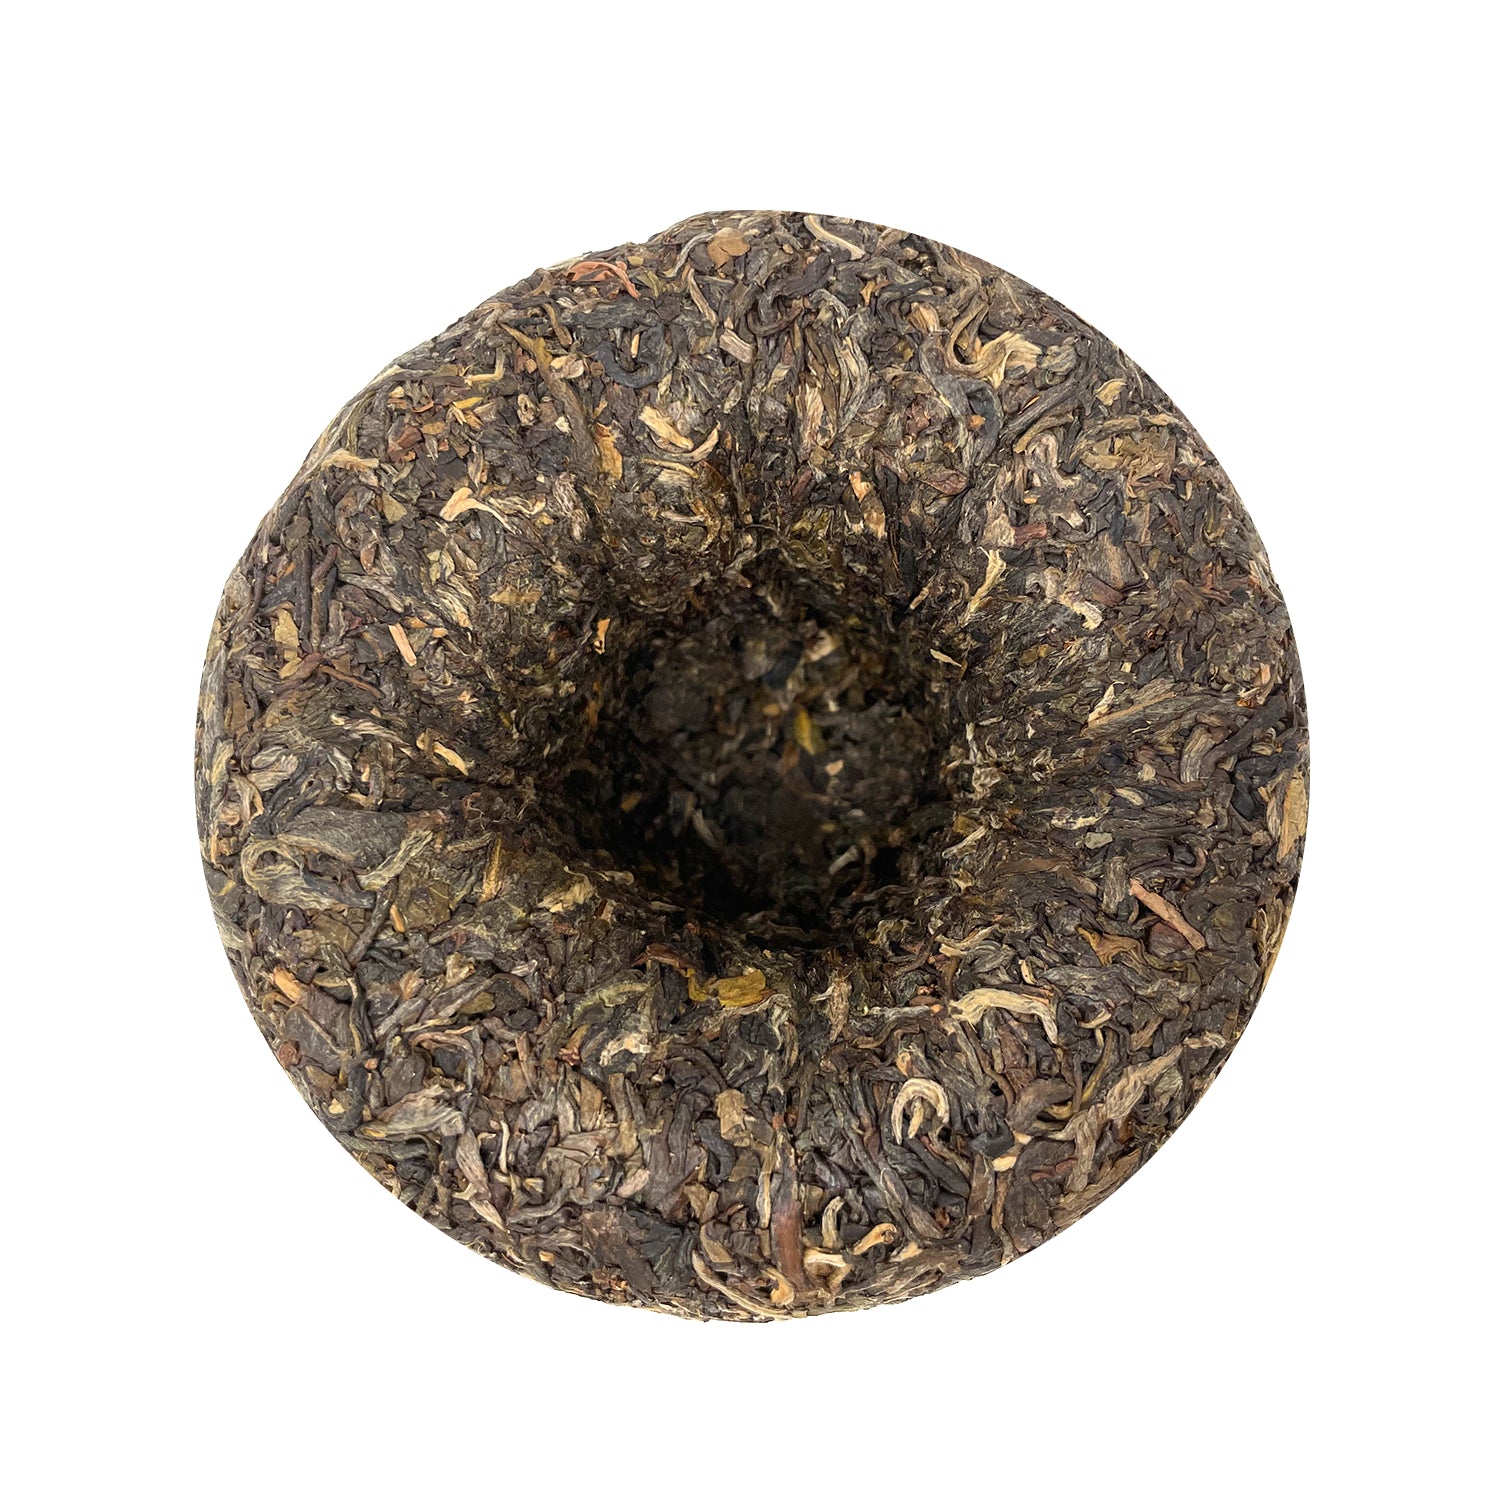 Xiaguan Tuocha Raw Pu-Erh Dark Tea（100g/Box）(Bogo)